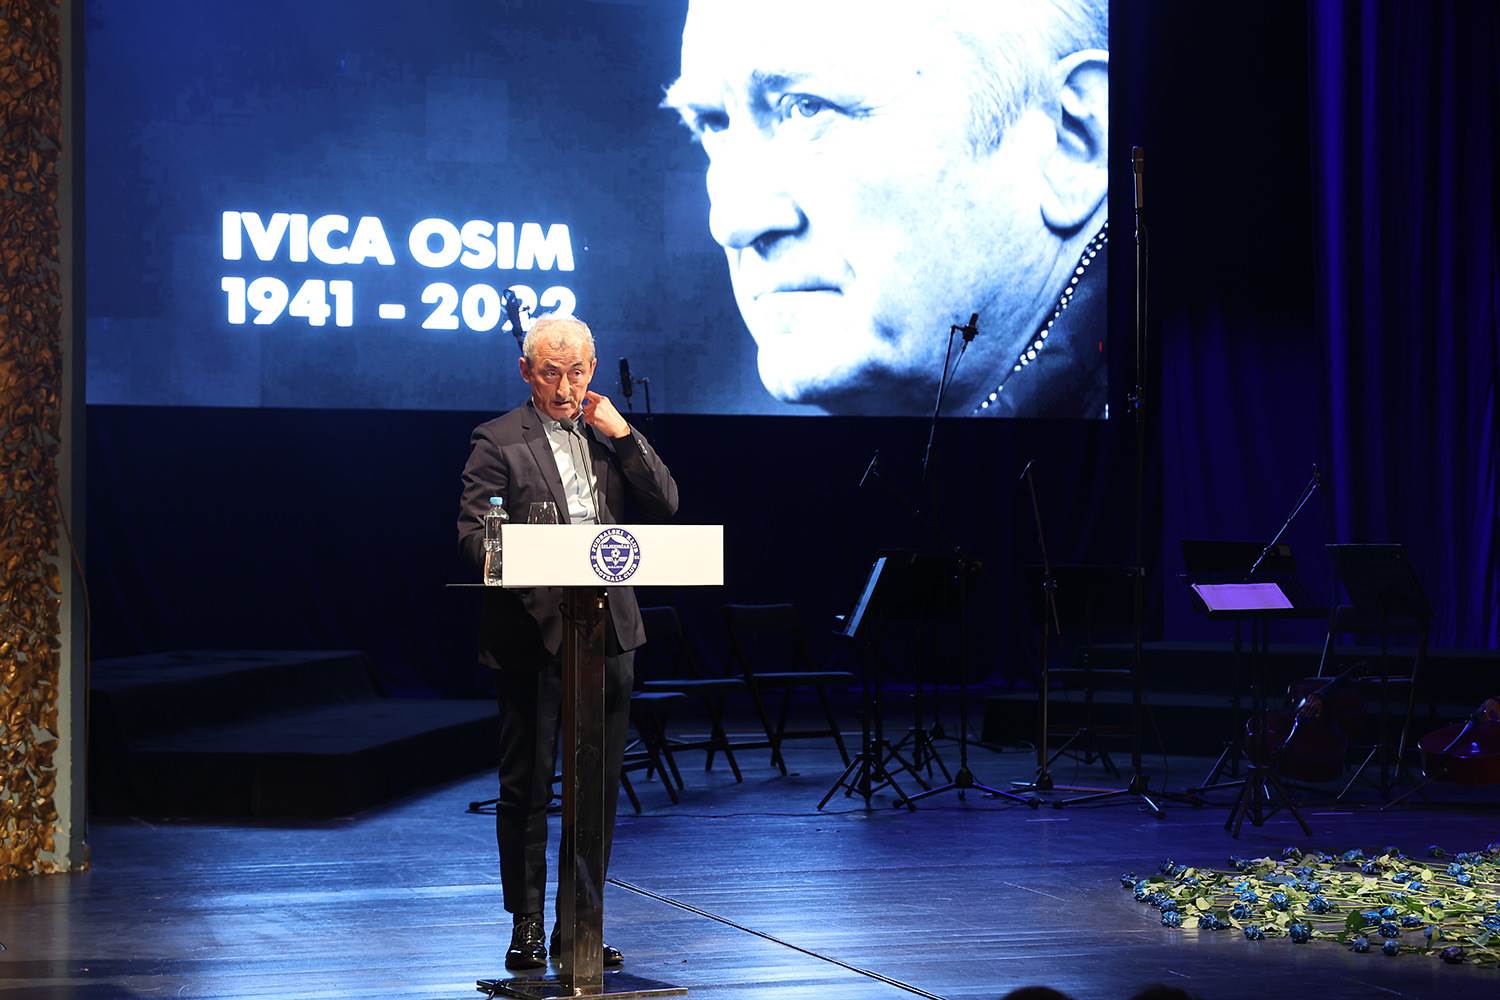  Ivica Osim-komemoracija i sahrana 